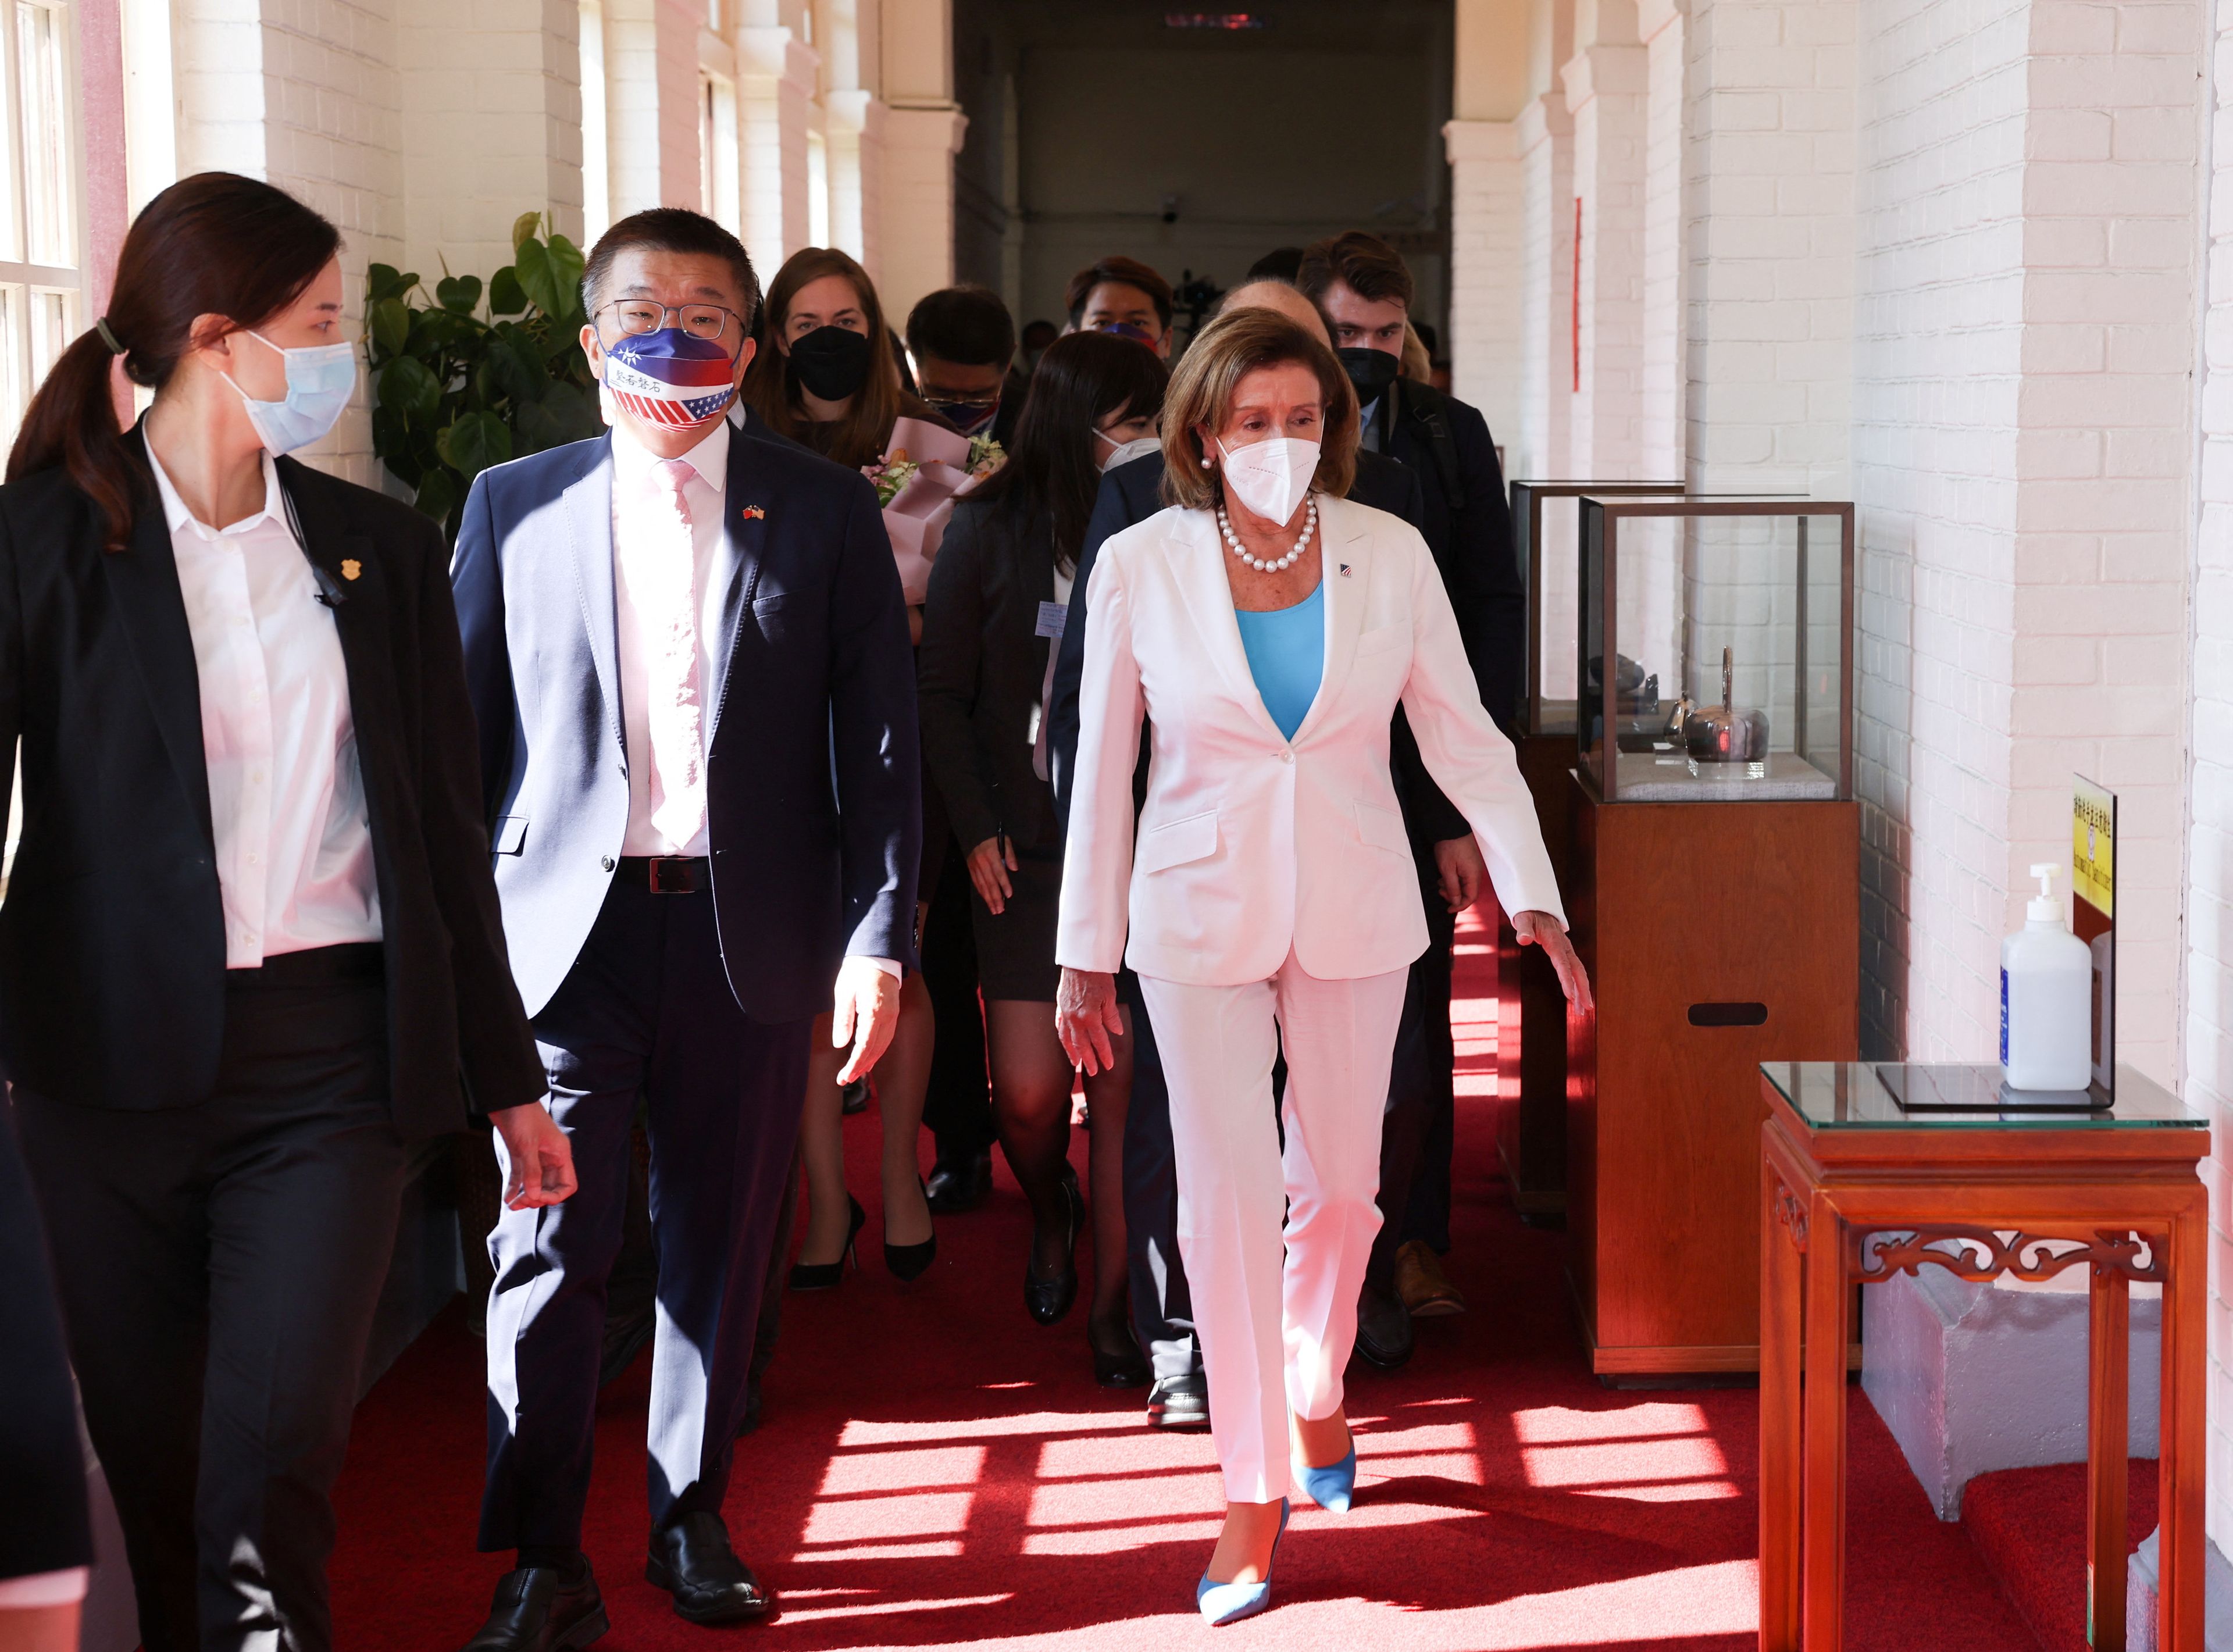 La presidenta de la Cámara de Representantes de Estados Unidos, Nancy Pelosi, visita Taiwan a pesar de las advertencias de China de una posible respuesta militar.